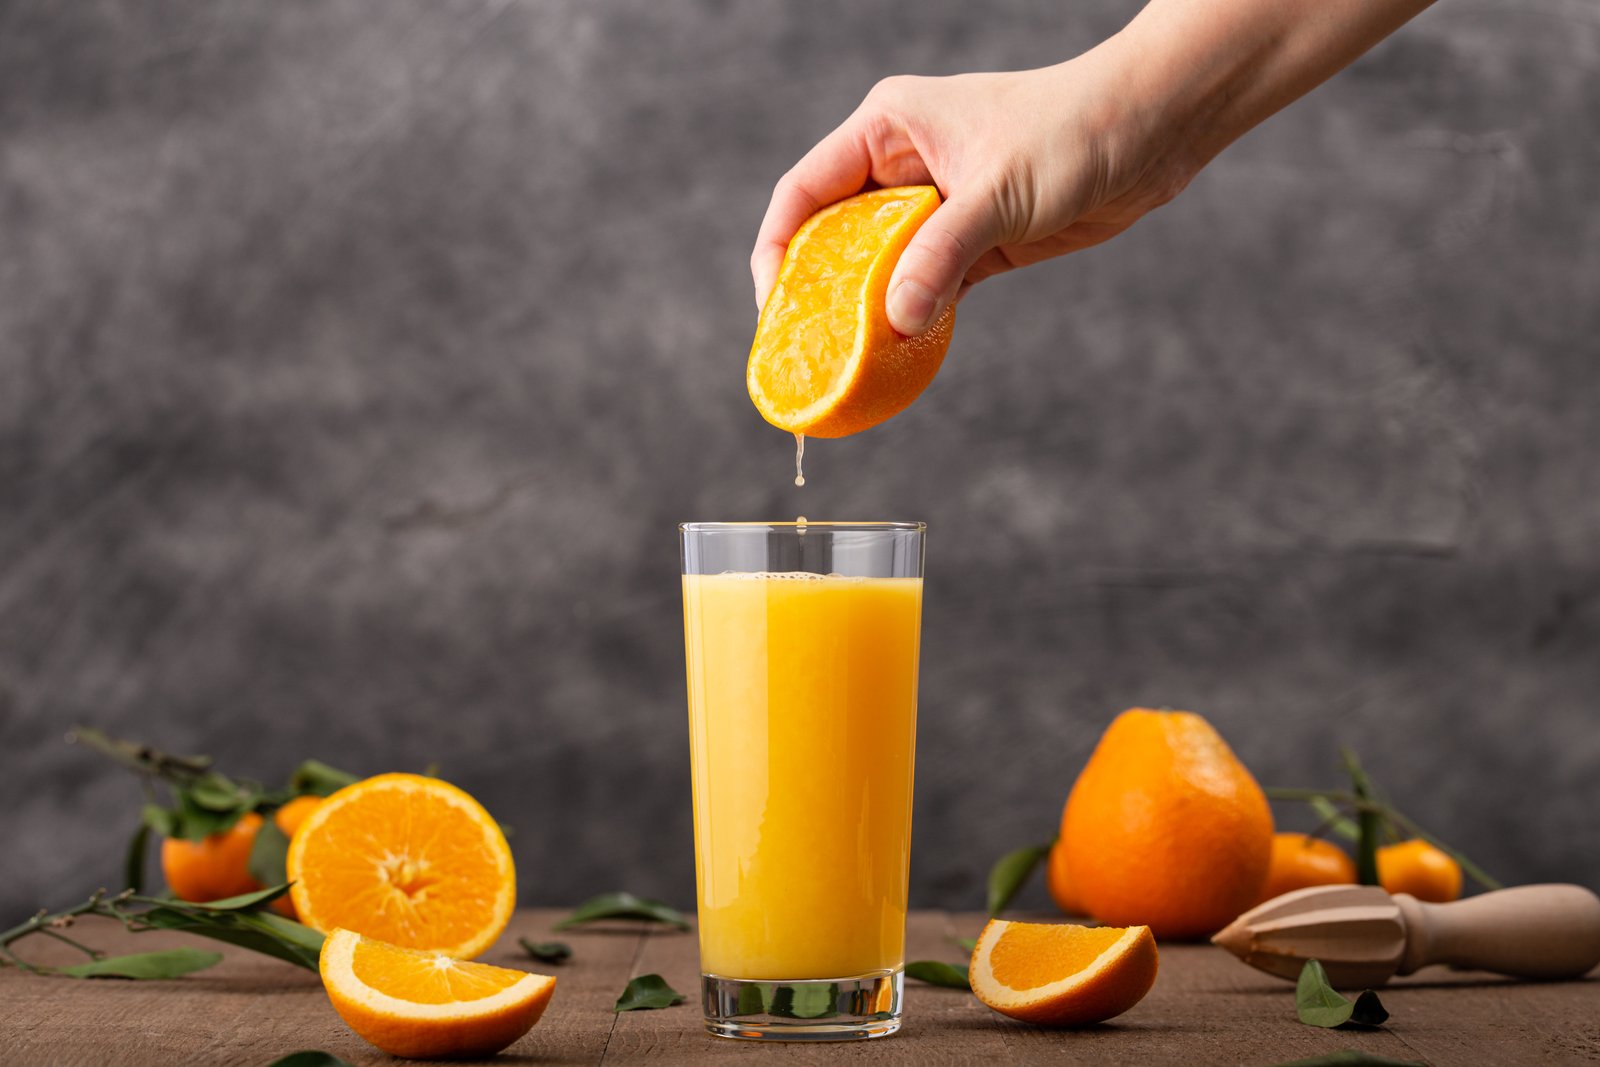 Para un desayuno más nutritivo, resulta mejor comer la naranja entera que tomarla en jugo. • Imagen: wirestock, Freepik.